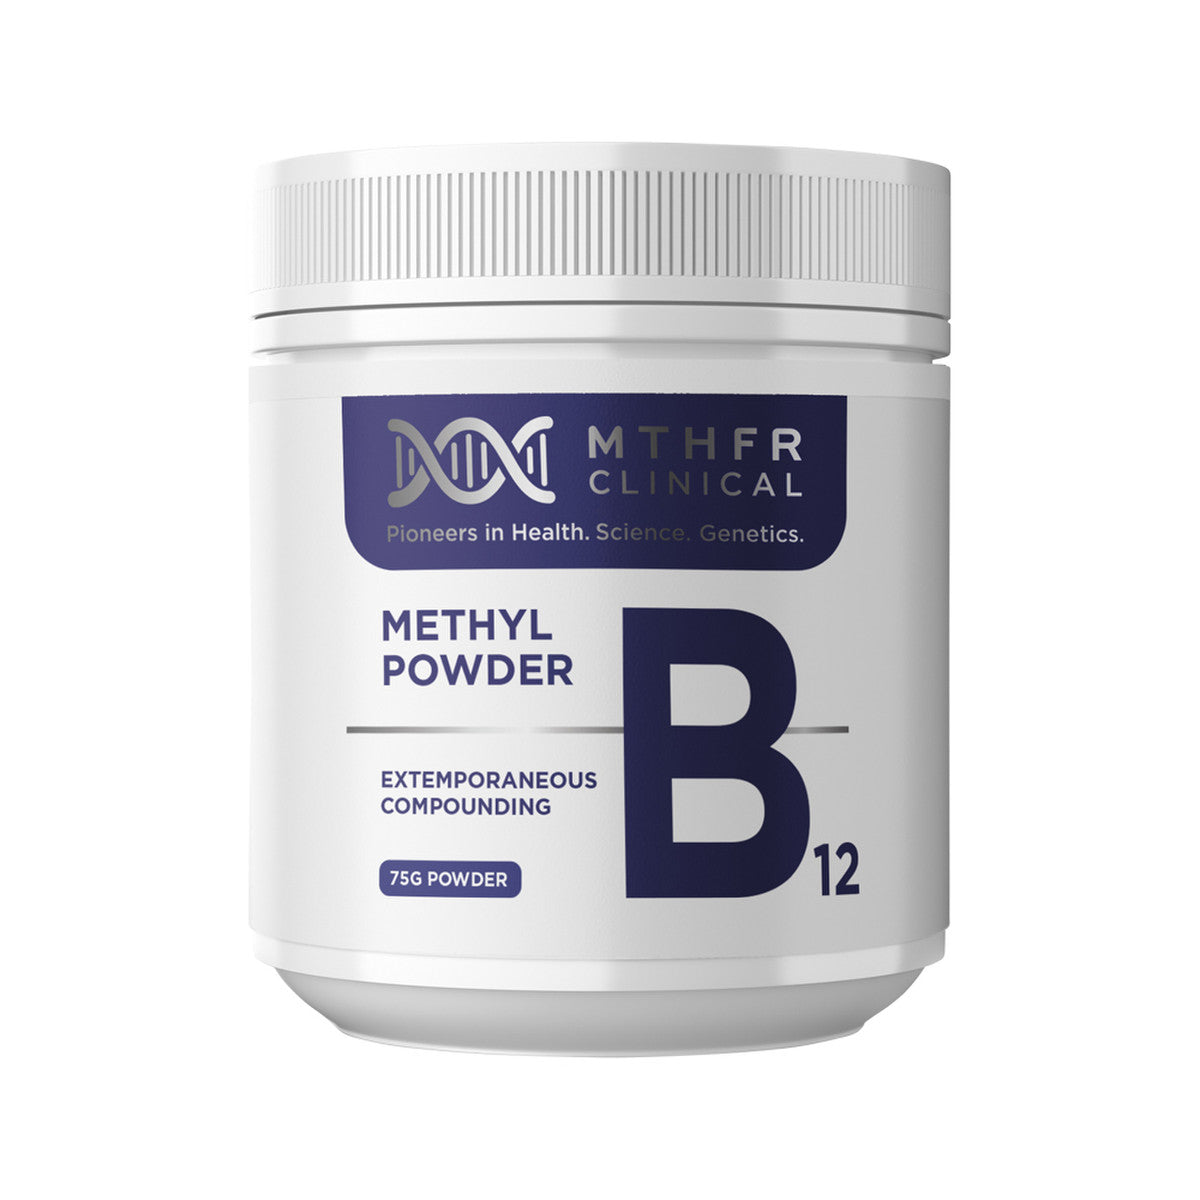 Mthfr Clinical - Methyl B12 Powder